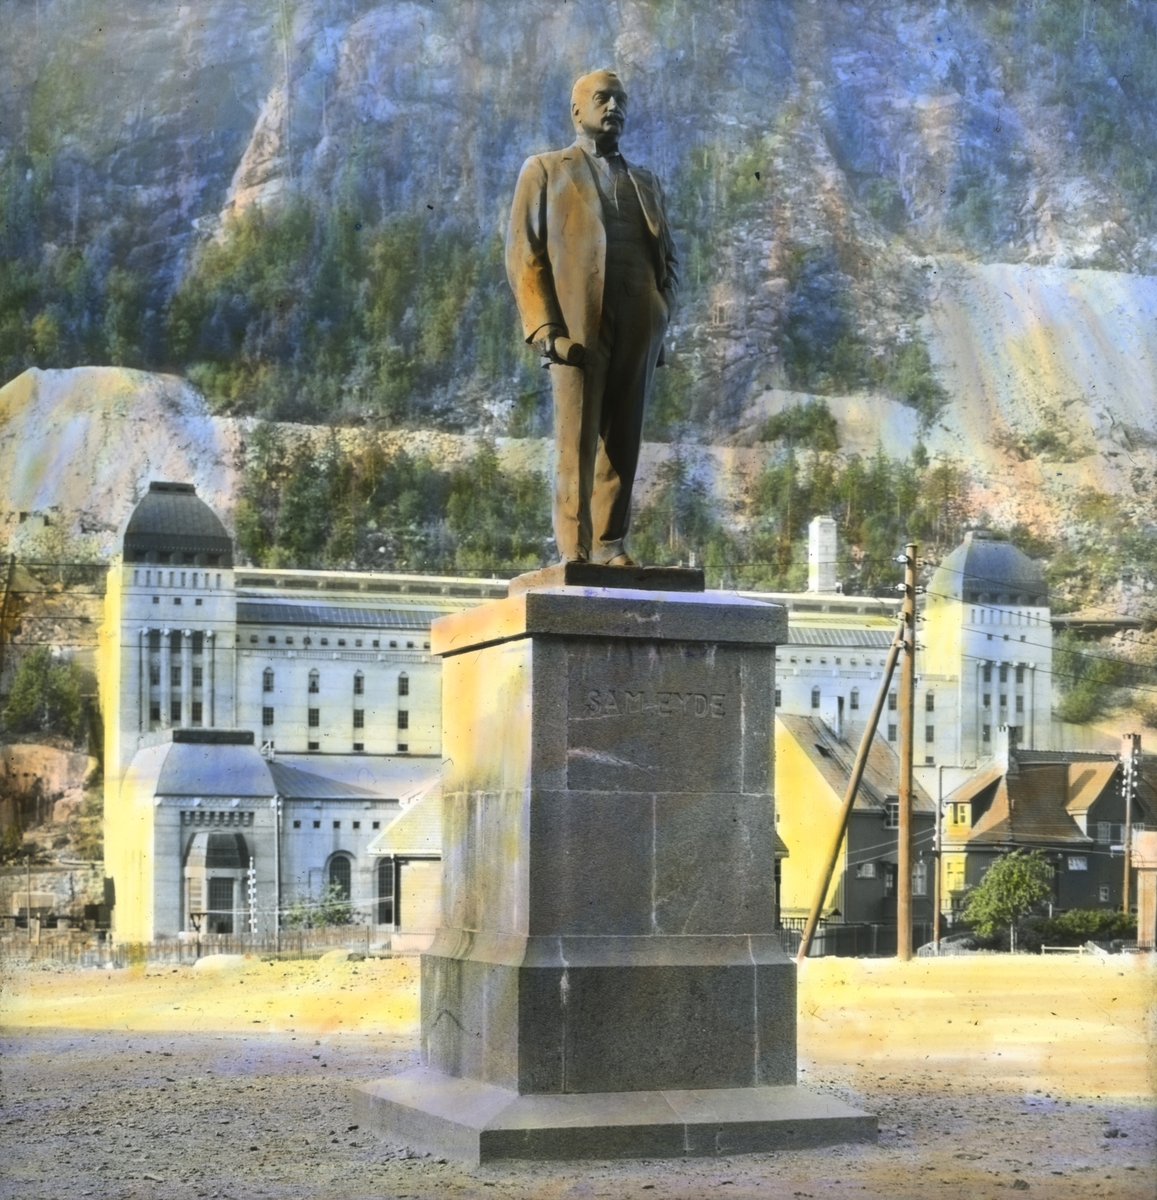 Håndkolorert dias. En statue av Sam Eyde på Rjukan, laget av Gunnar Utsond. Statuen ble avduket på torget i 1920. Bak sees Såheim kraftstasjon.